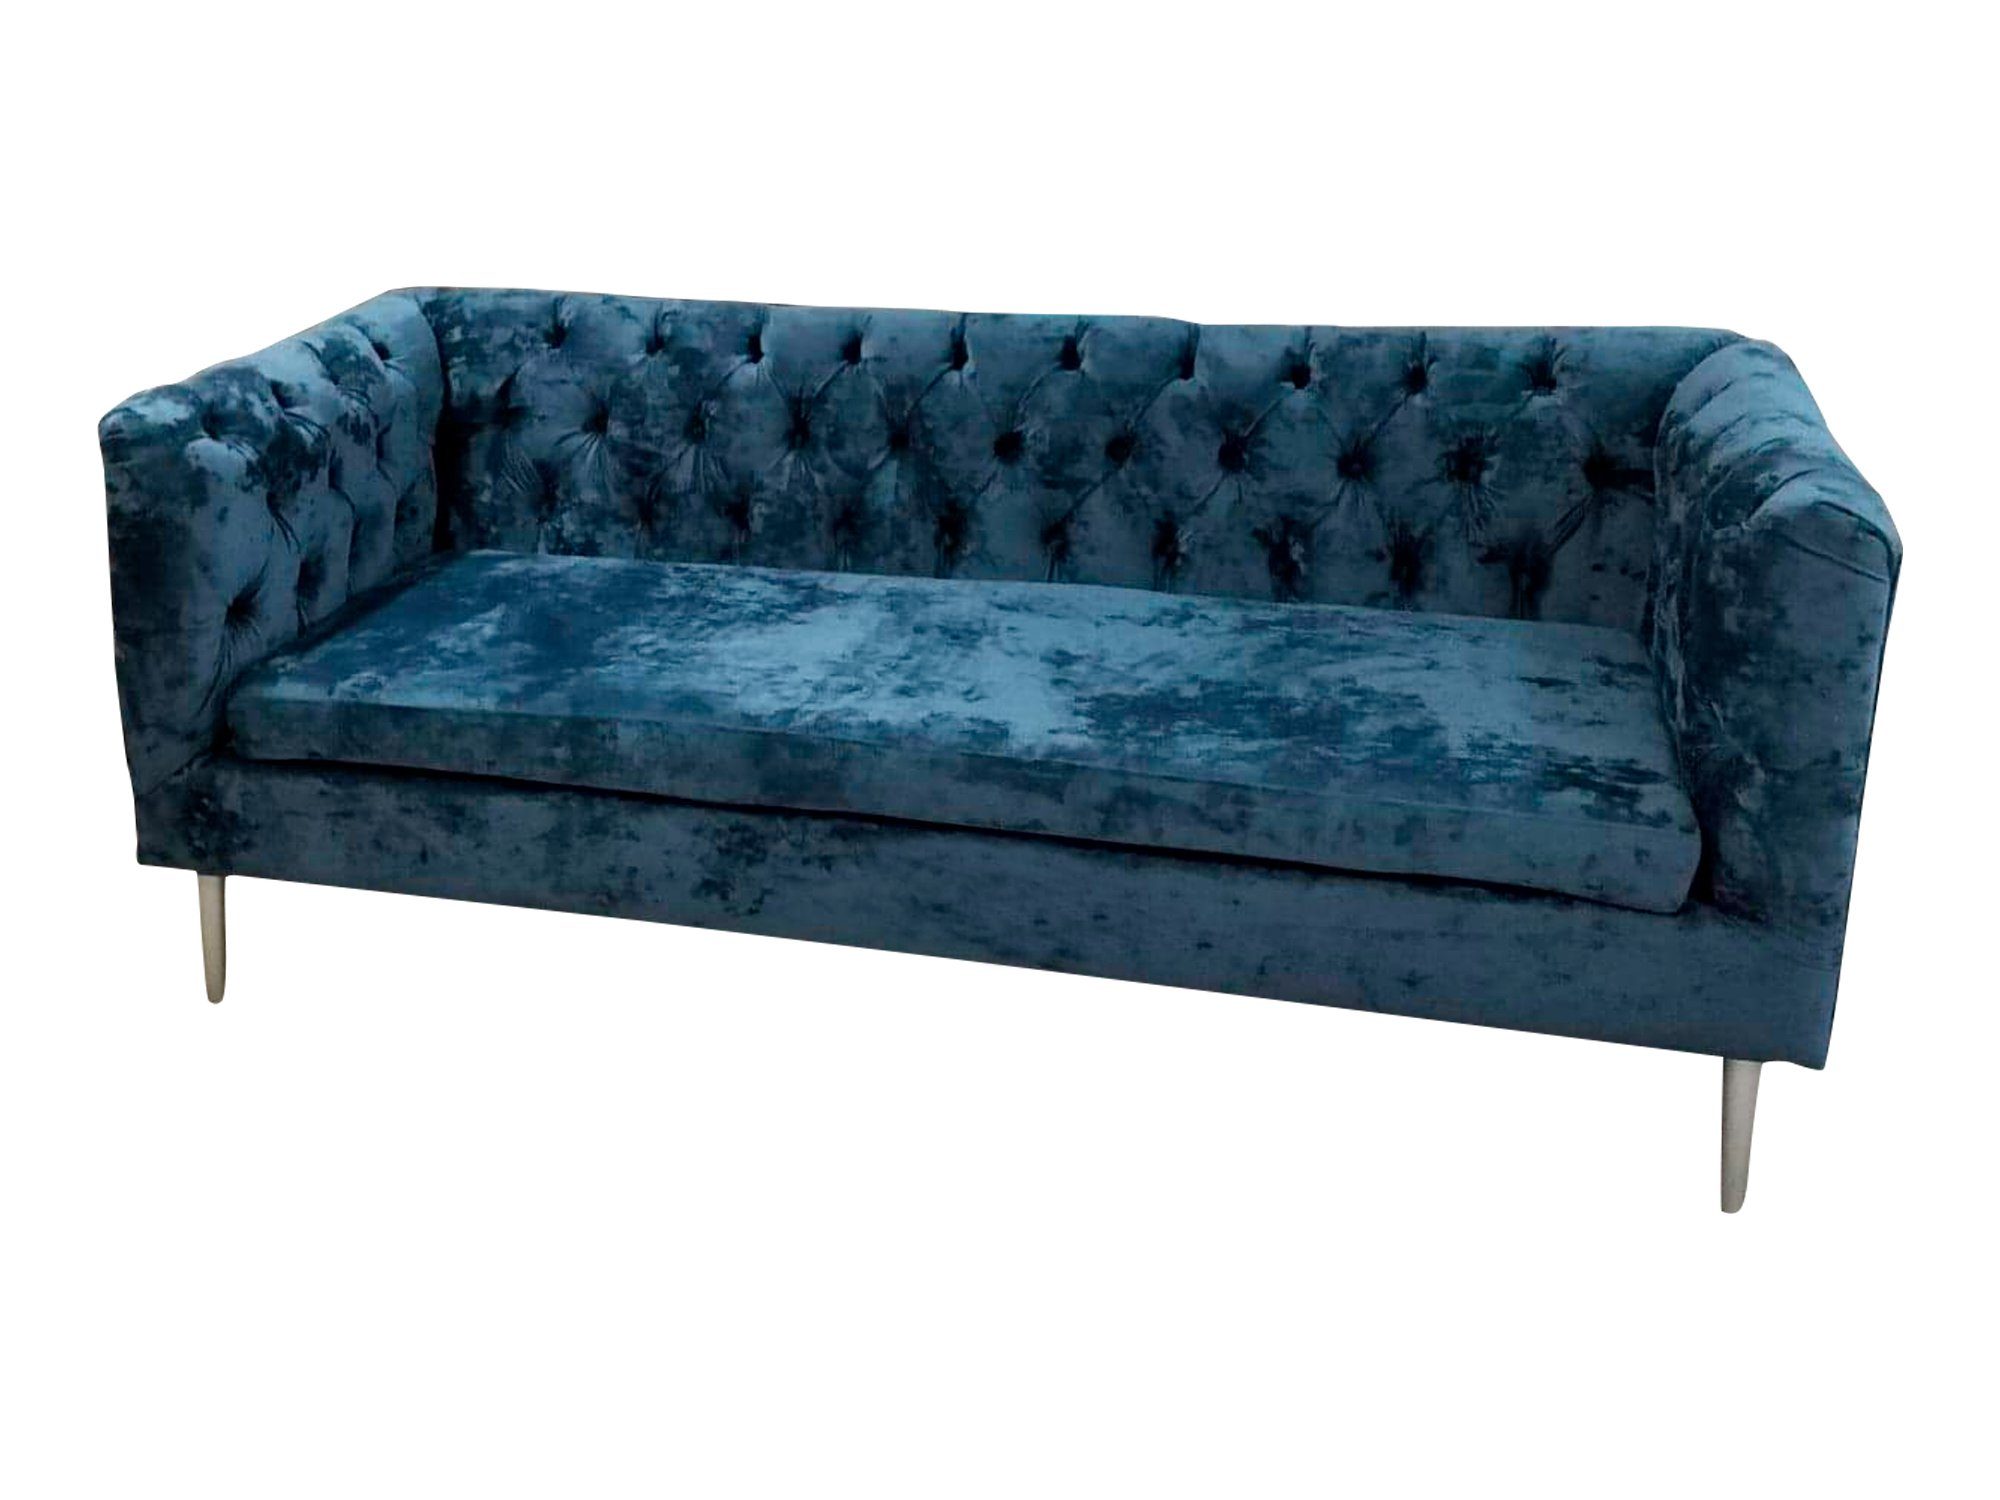 JVmoebel Sofa, Luxus Chesterfield Sofa 3 Sitzer Couch Textil Modern Sofas Blau Turkis